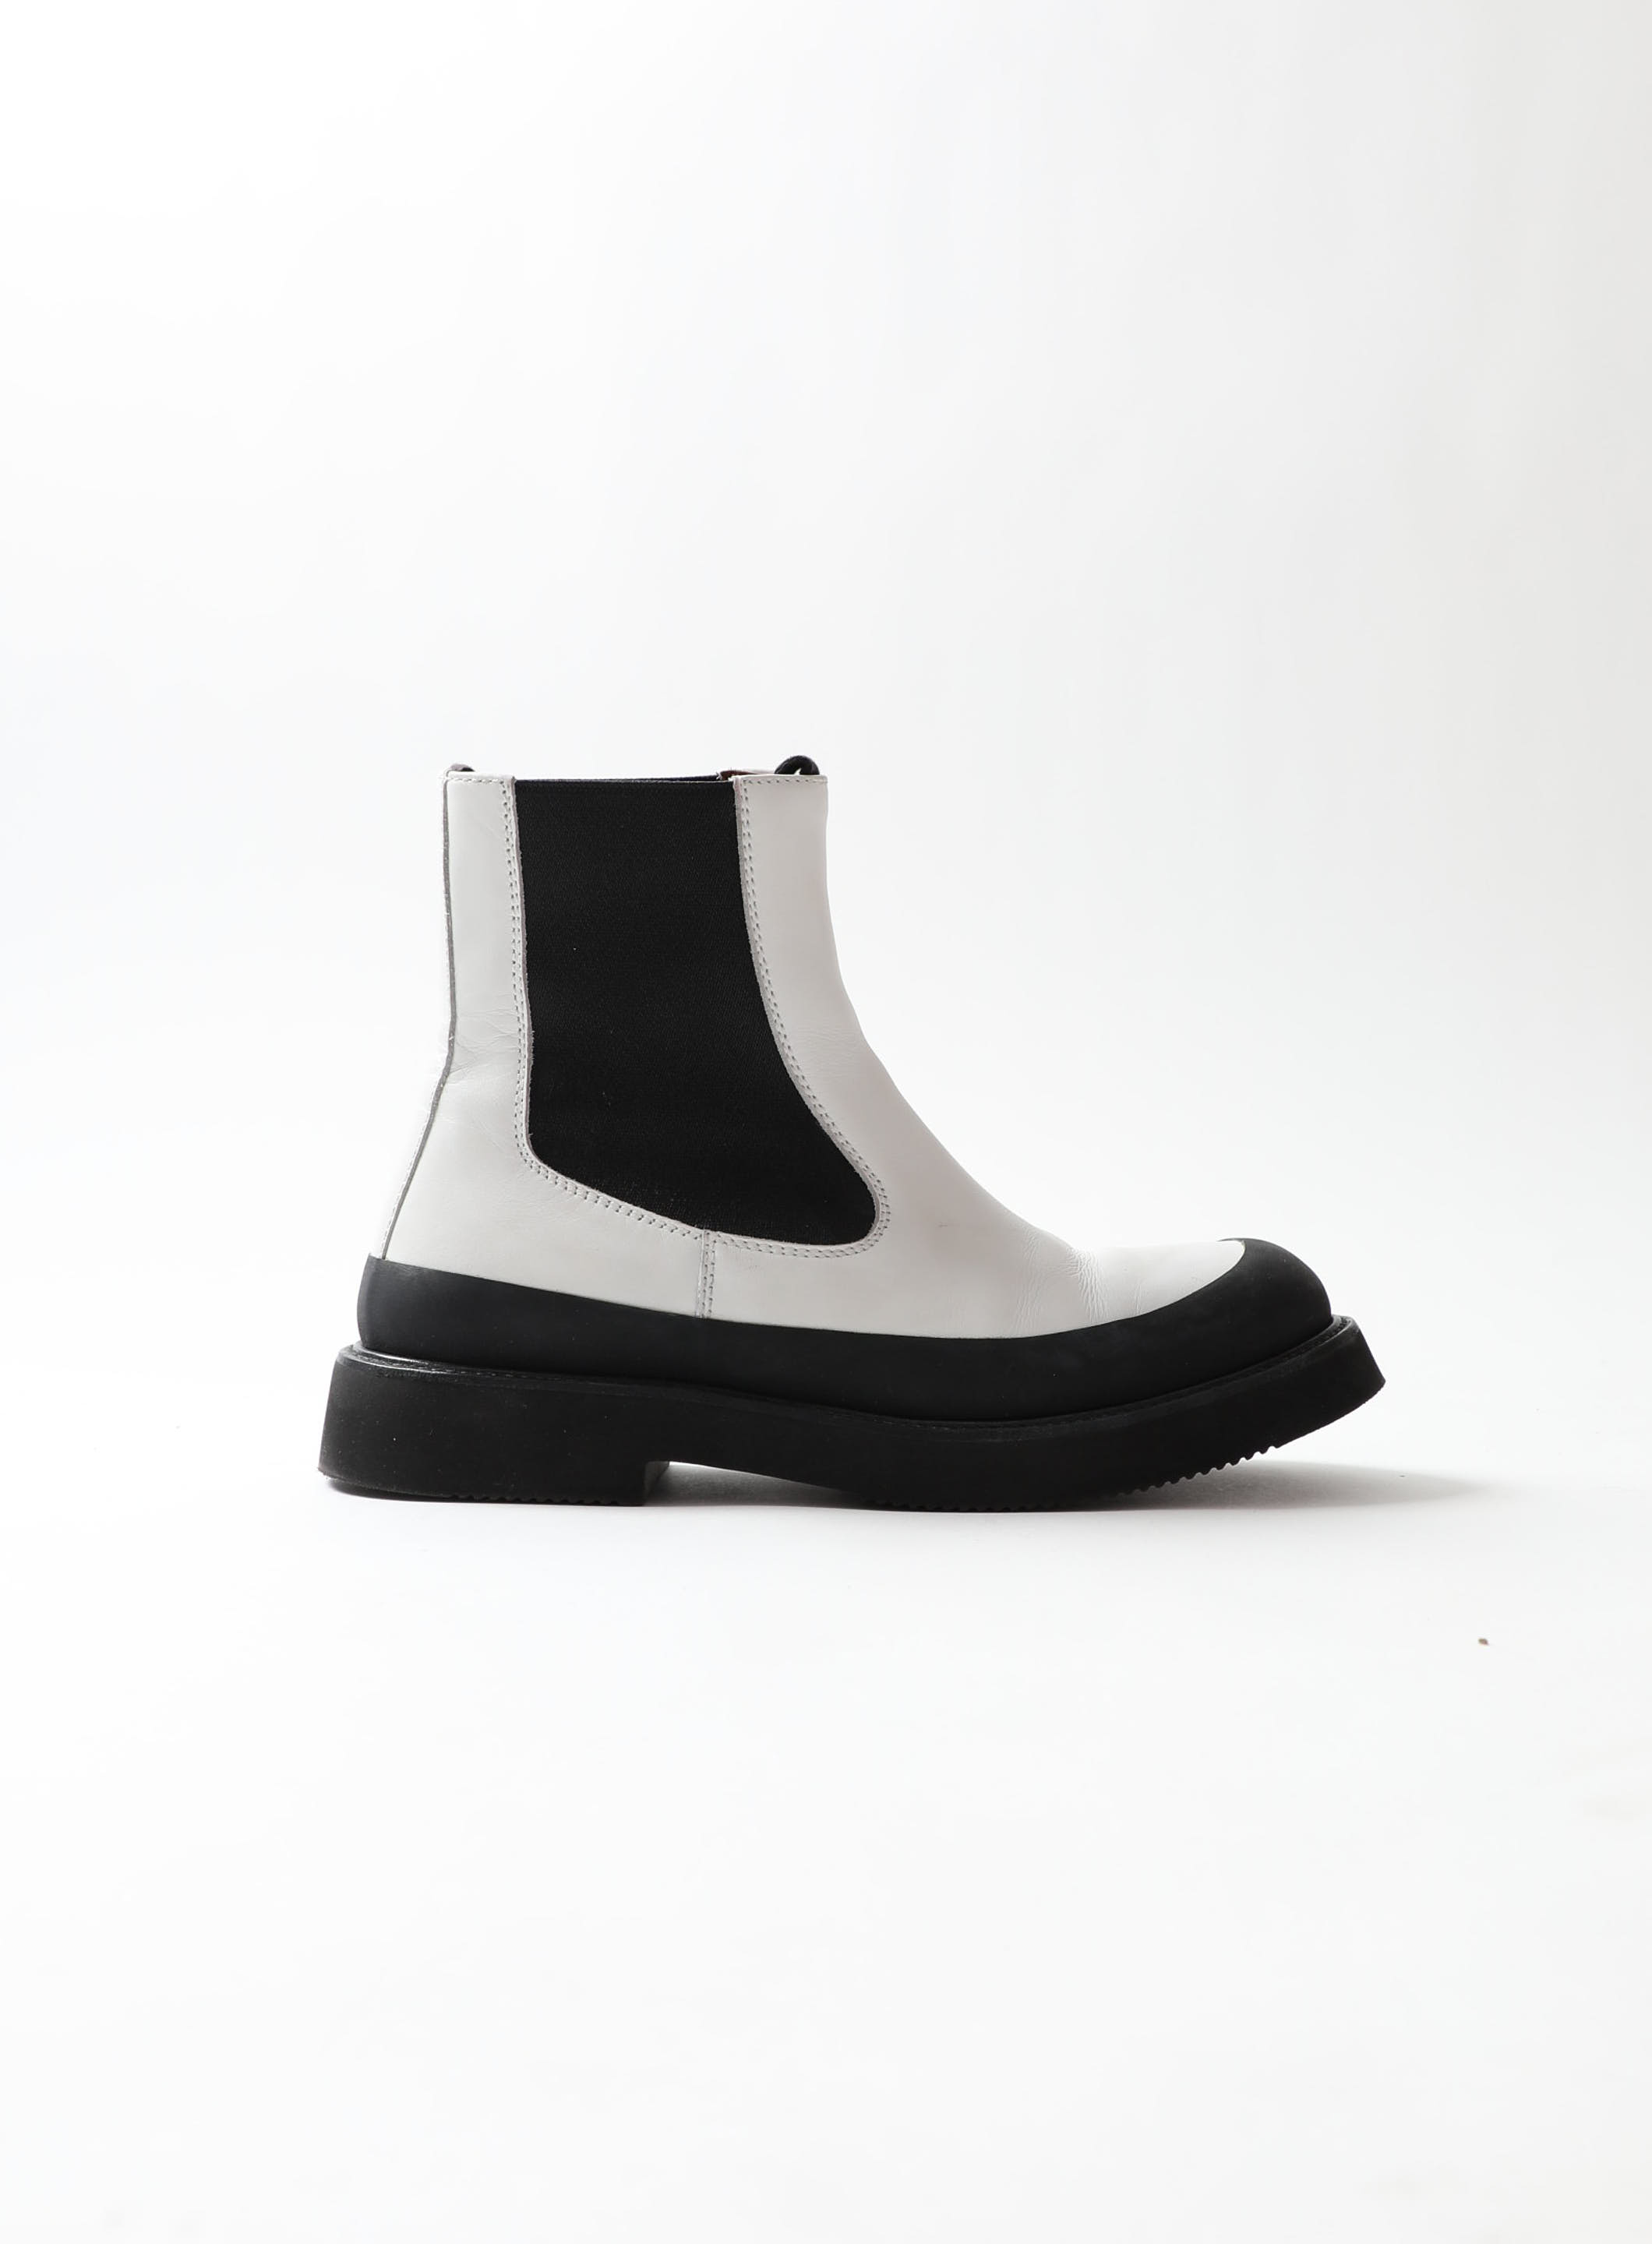 Louis Vuitton Parisienne Ankle Boot